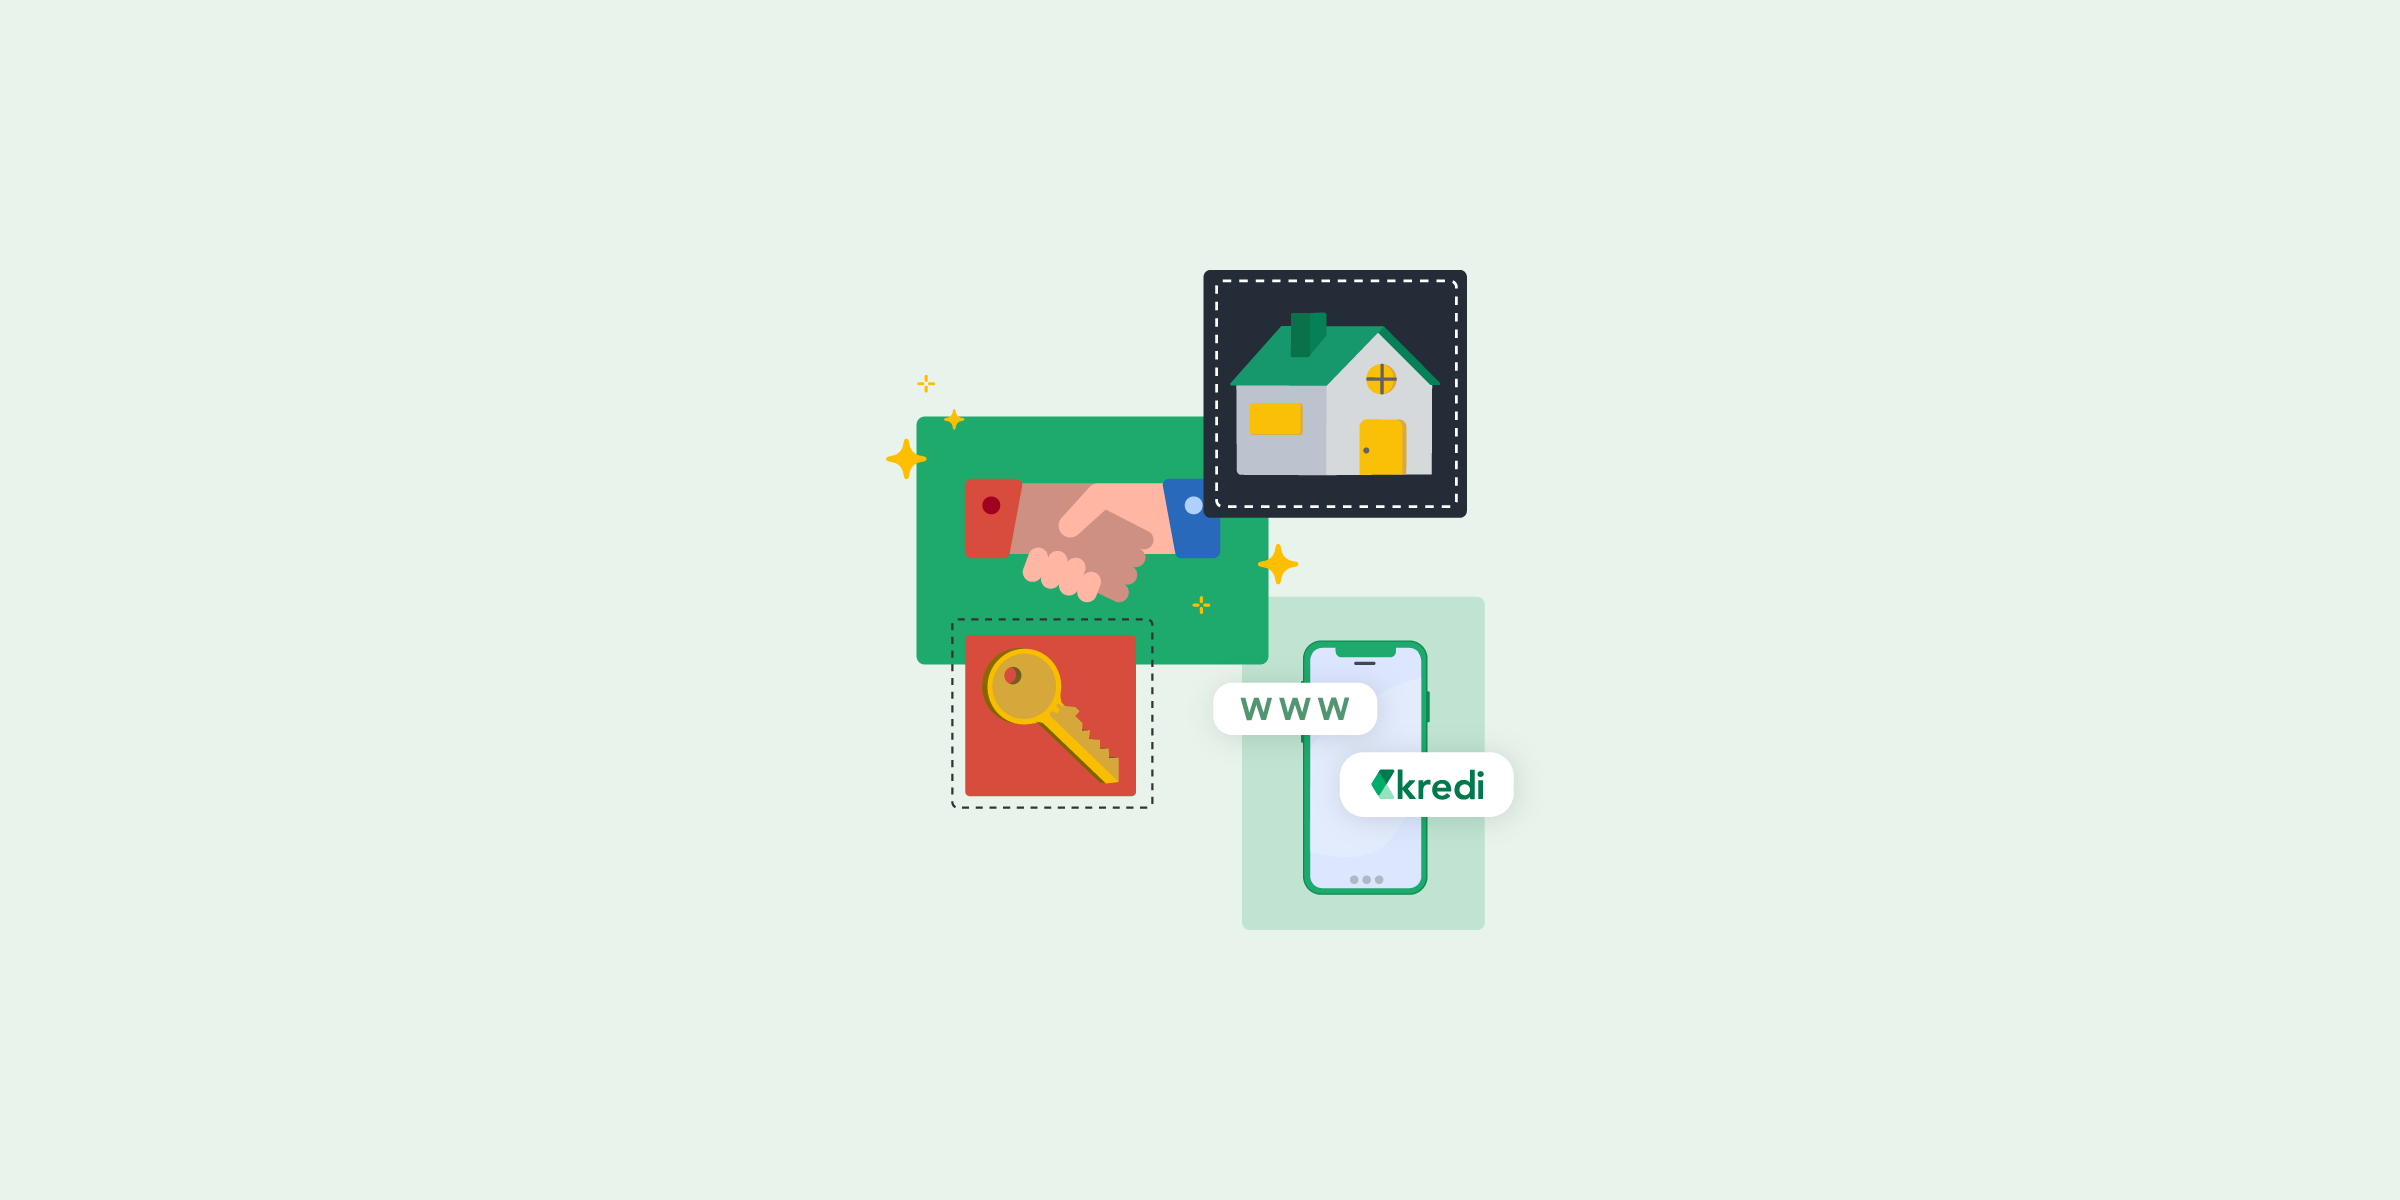 Ilustración con fondo verde, una casa, un celular, unas manos haciendo un trato y unas llaves.